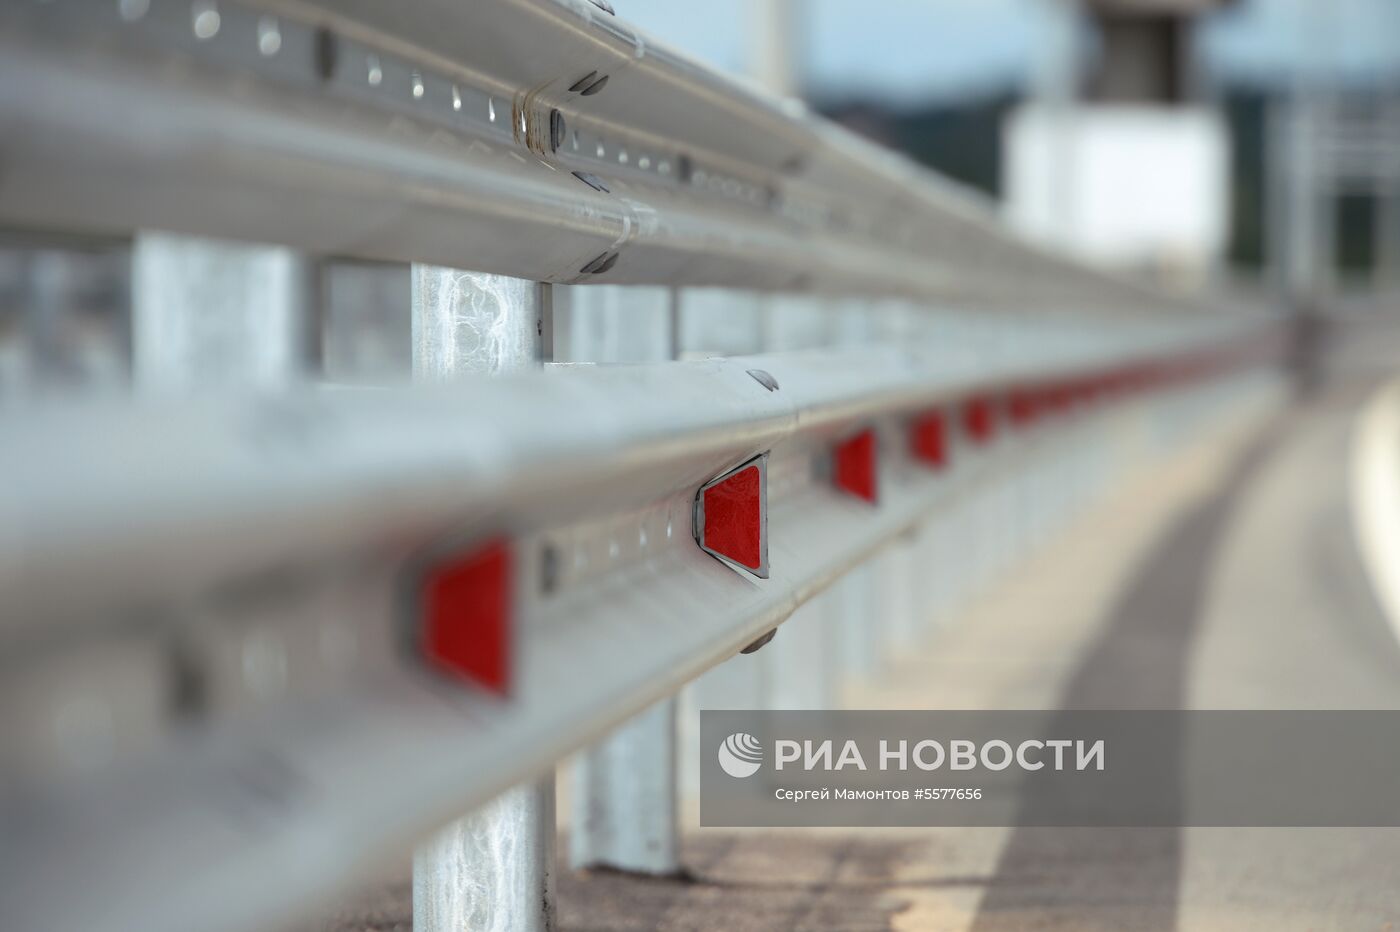 Строительство ЦКАД и трассы М-11 "Москва - Санкт-Петербург"